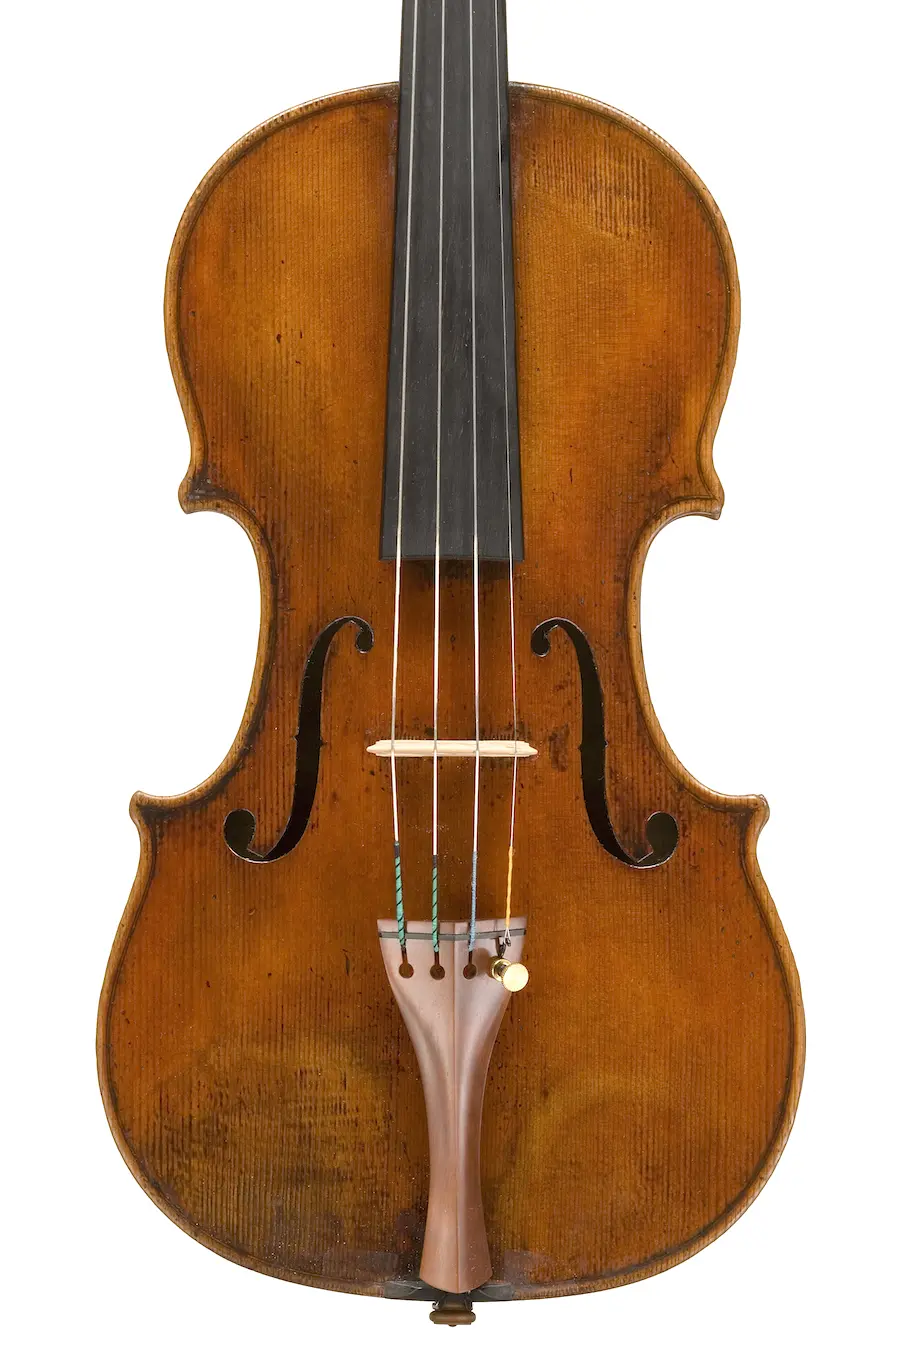 giovanni battista guadagnini violin - What is a Guadagnini violin